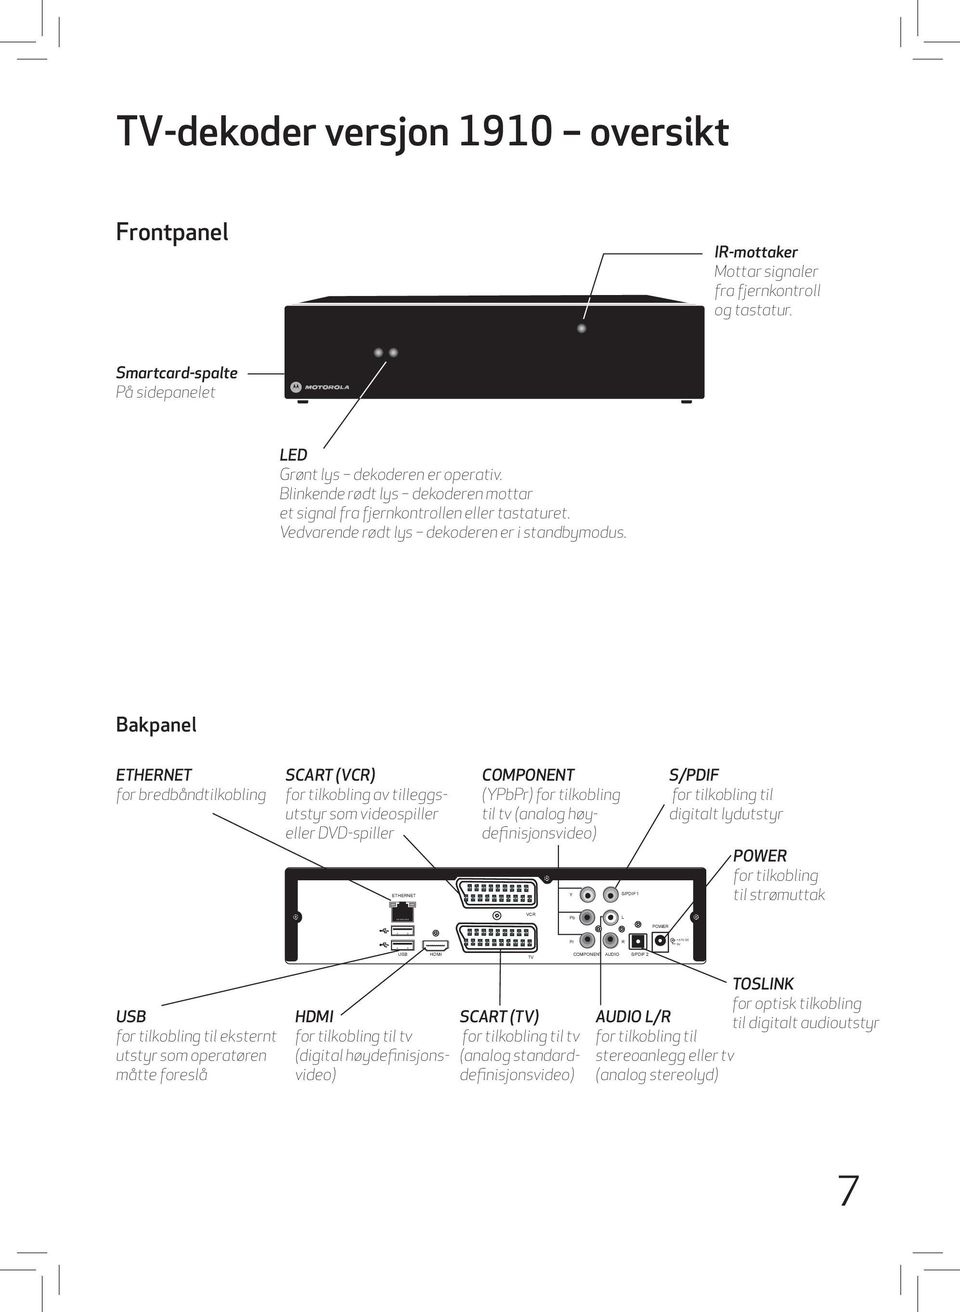 Bakpanel ETHERNET for bredbåndtilkobling SCART (VCR) for tilkobling av tilleggsutstyr som videospiller eller DVD-spiller COMPONENT (YPbPr) for tilkobling til tv (analog høydefinisjonsvideo) S/PDIF